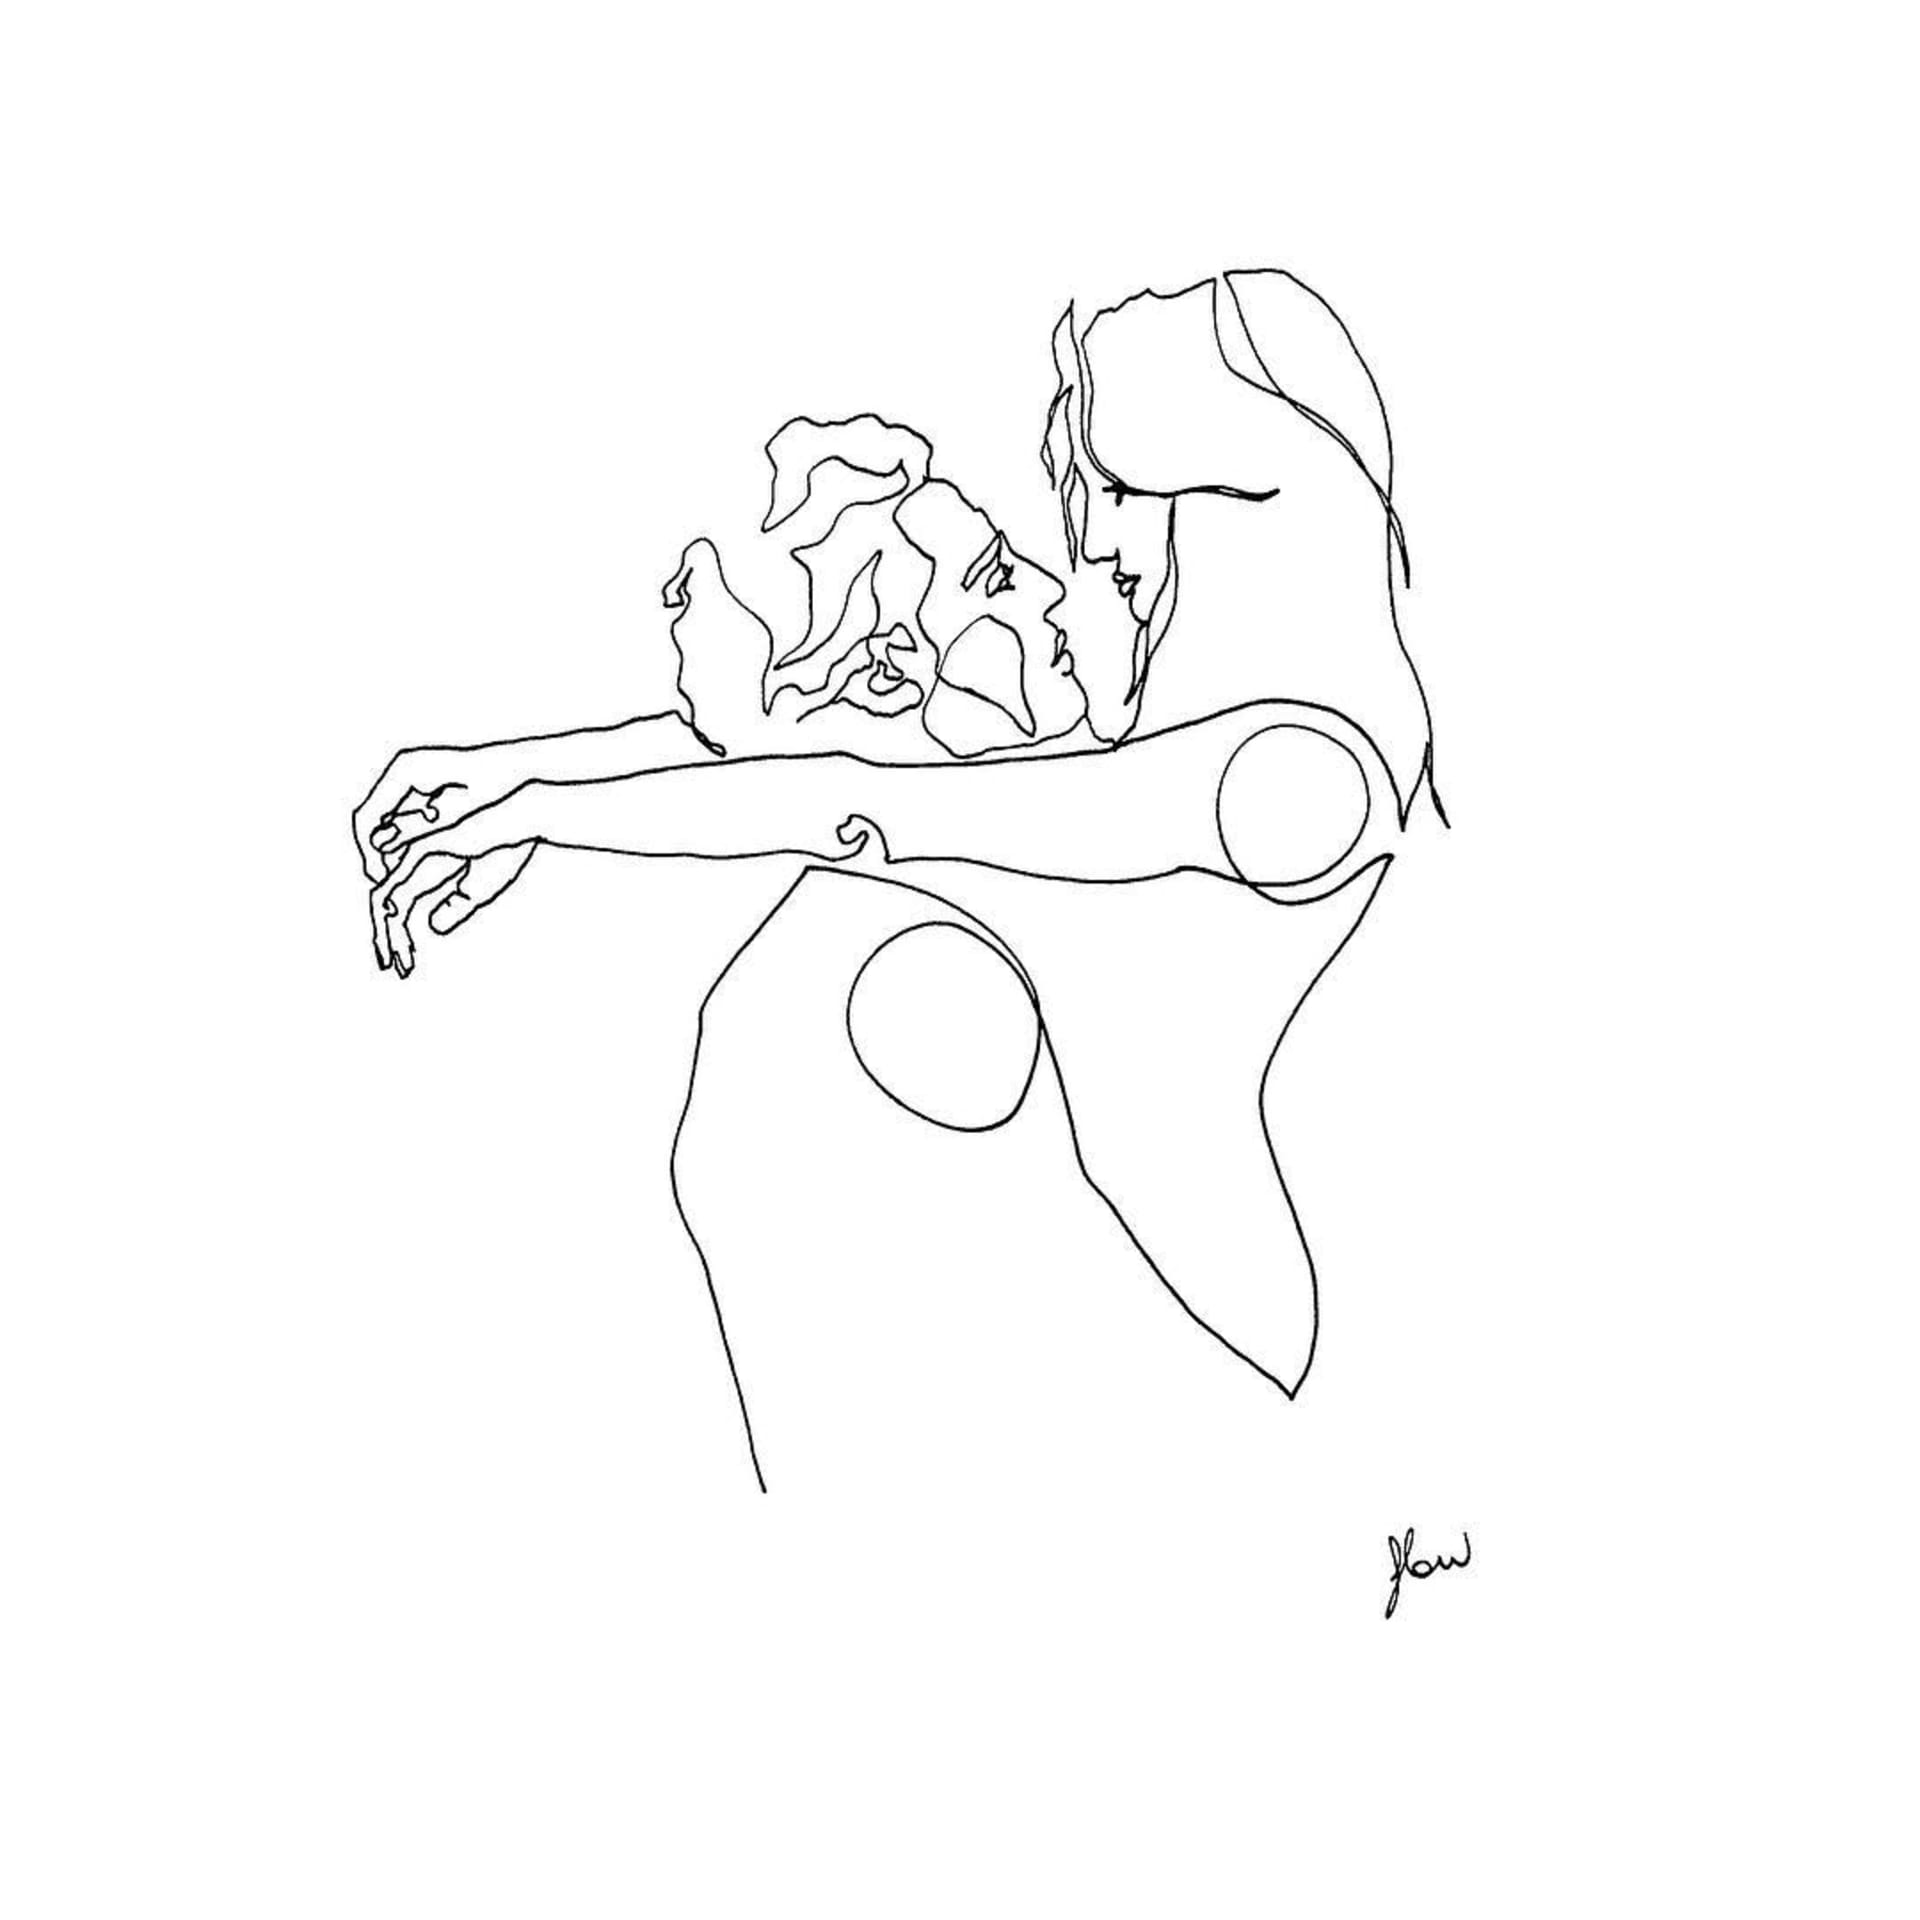 Ilustrace, které znázorňují sex z pohledu ženy. 6